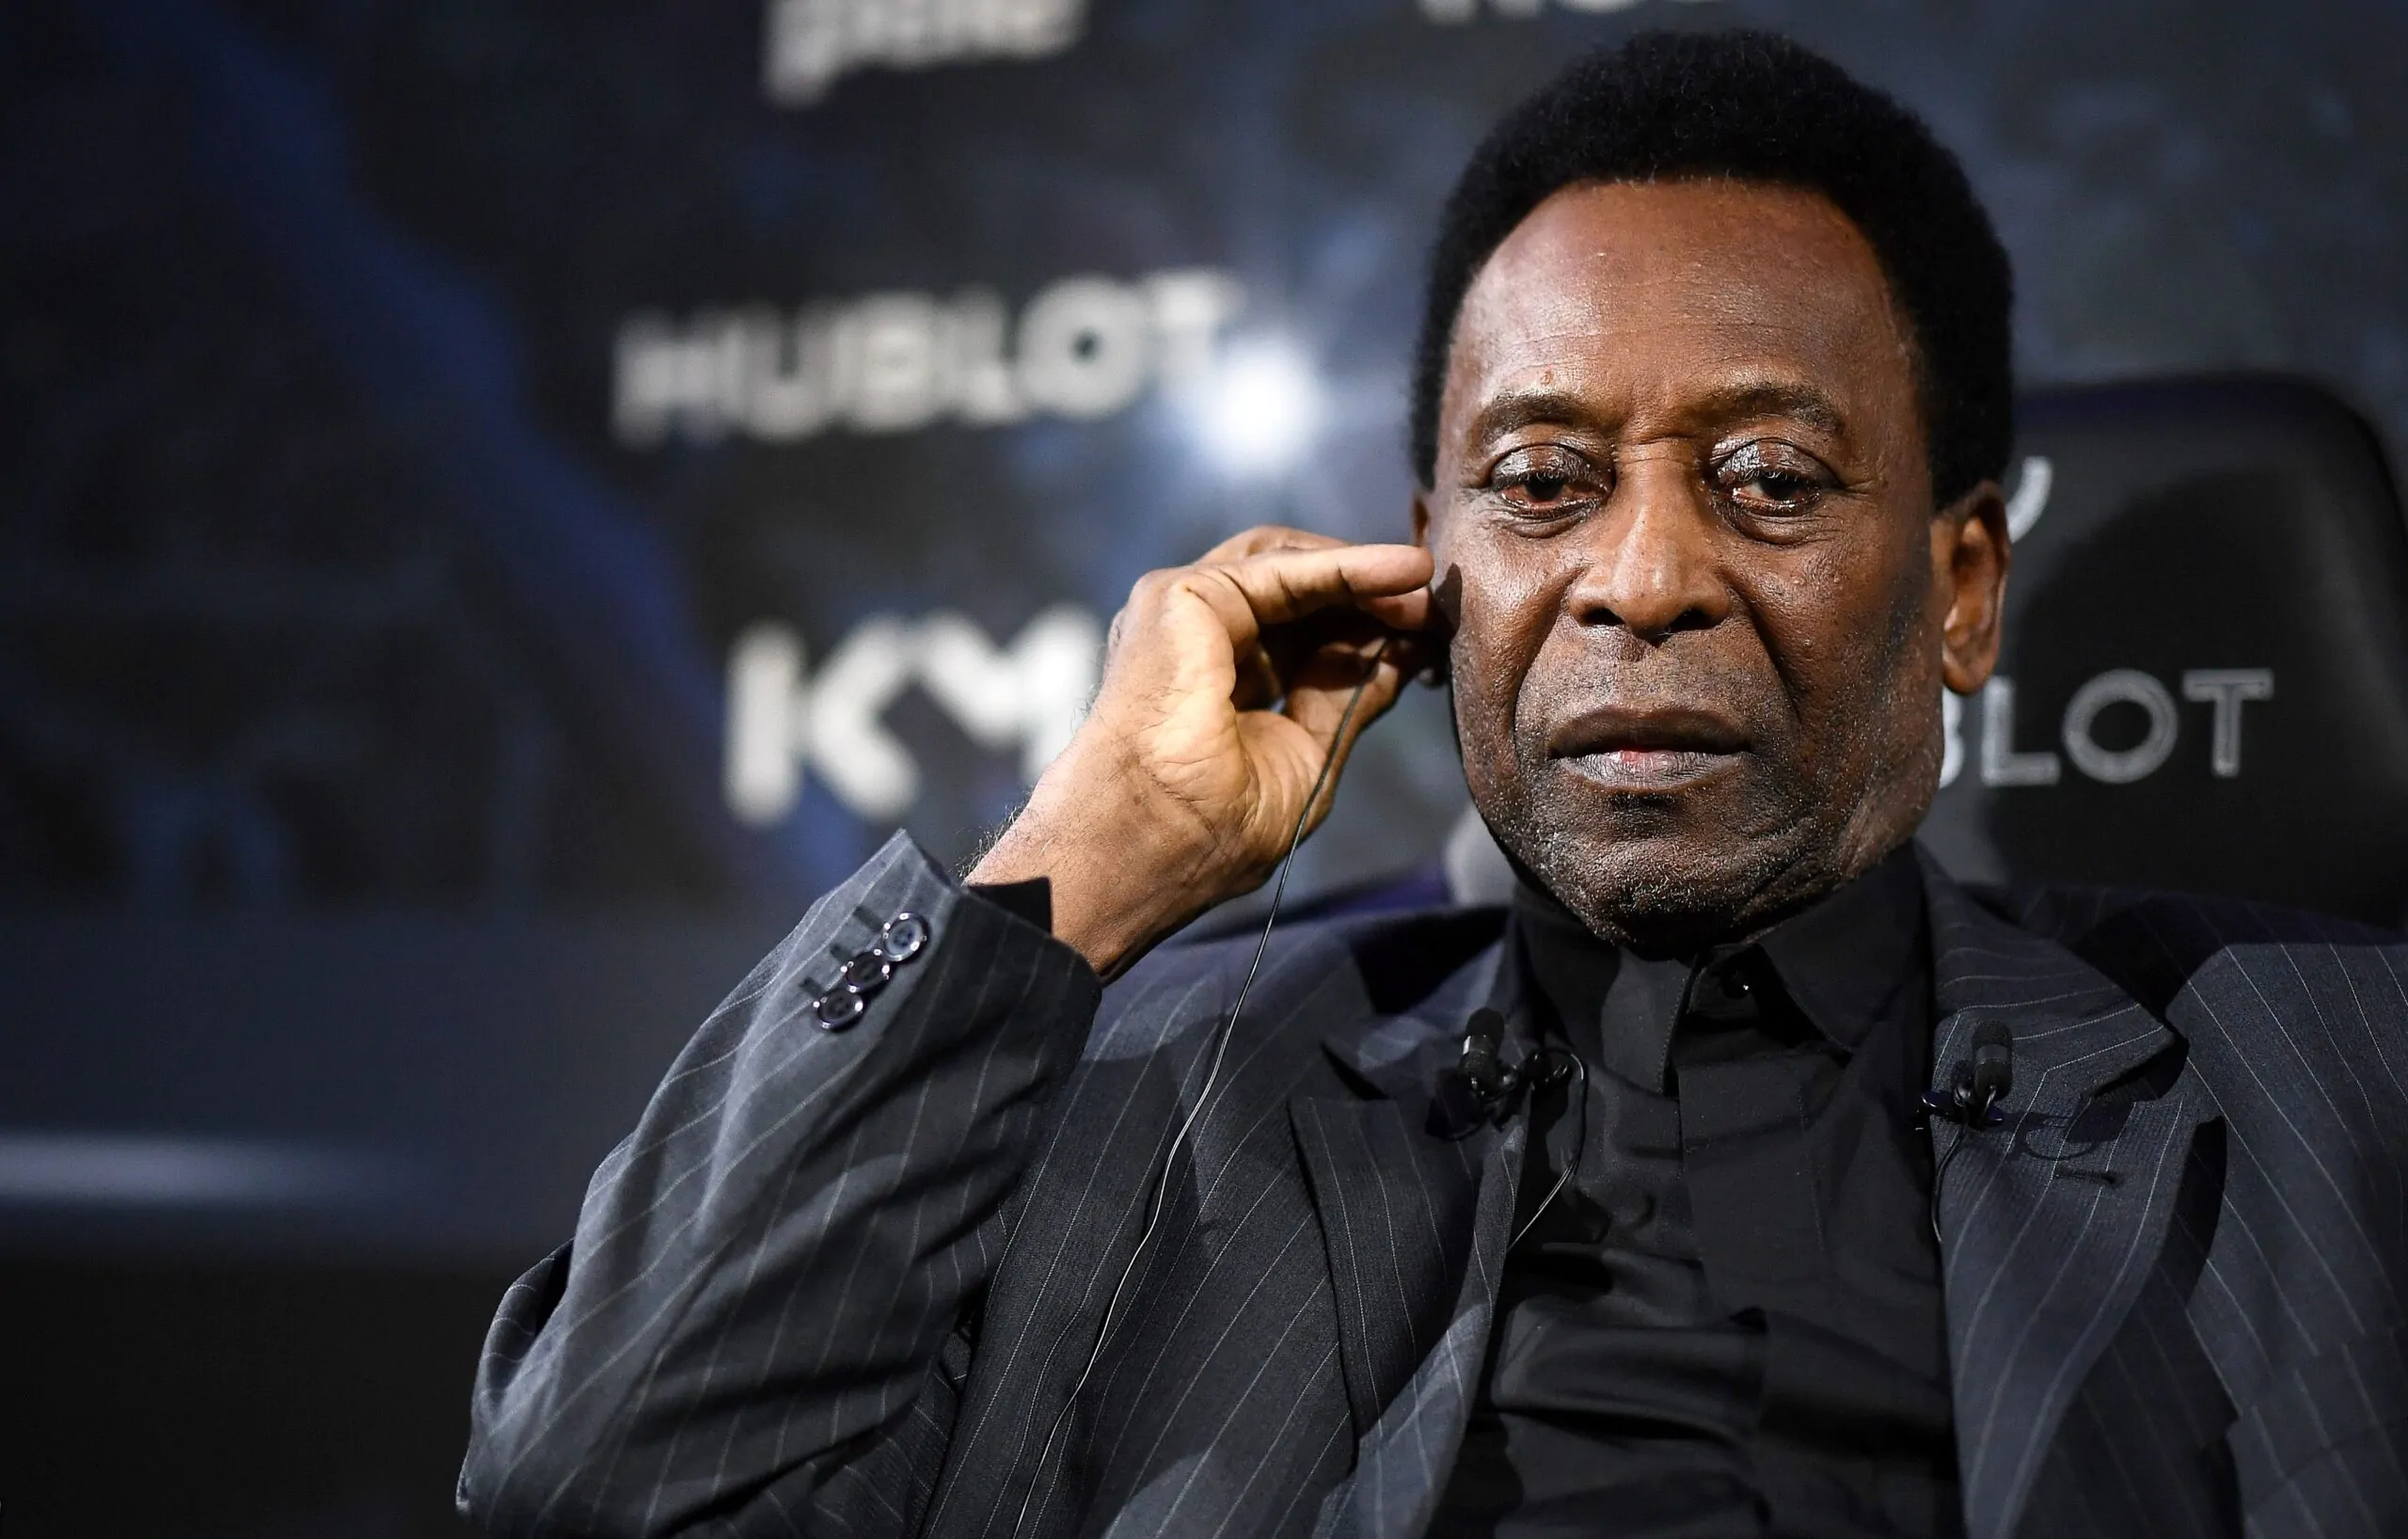 Ansia Pelé, i medici: “Le sue condizioni peggiorano”